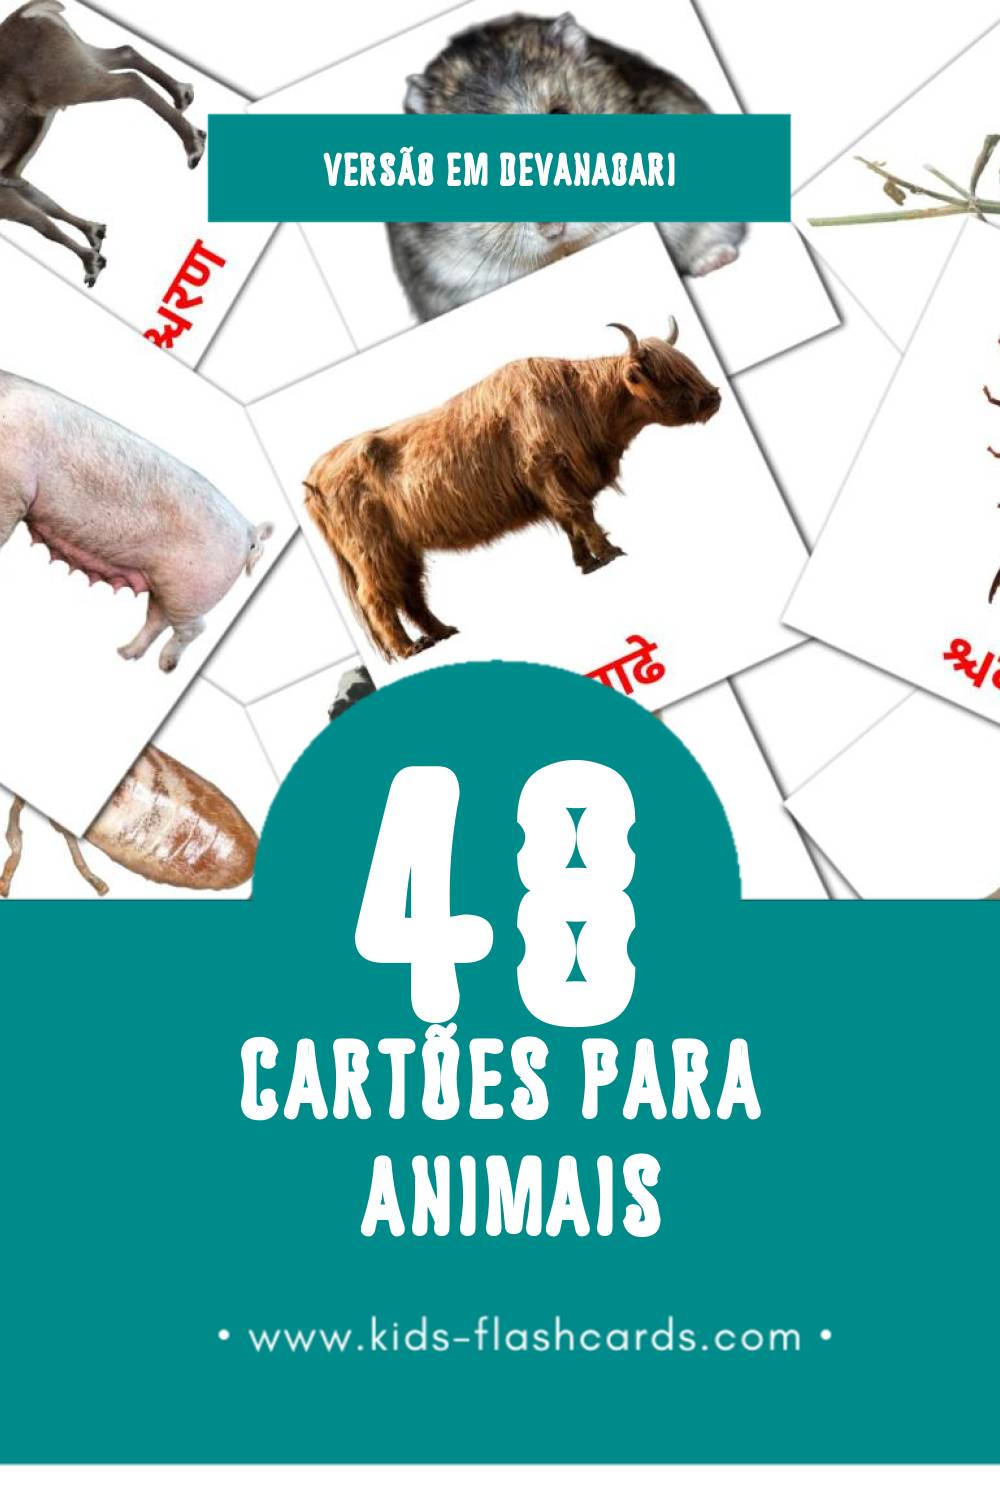 Flashcards de जानवर Visuais para Toddlers (48 cartões em Devanagari)